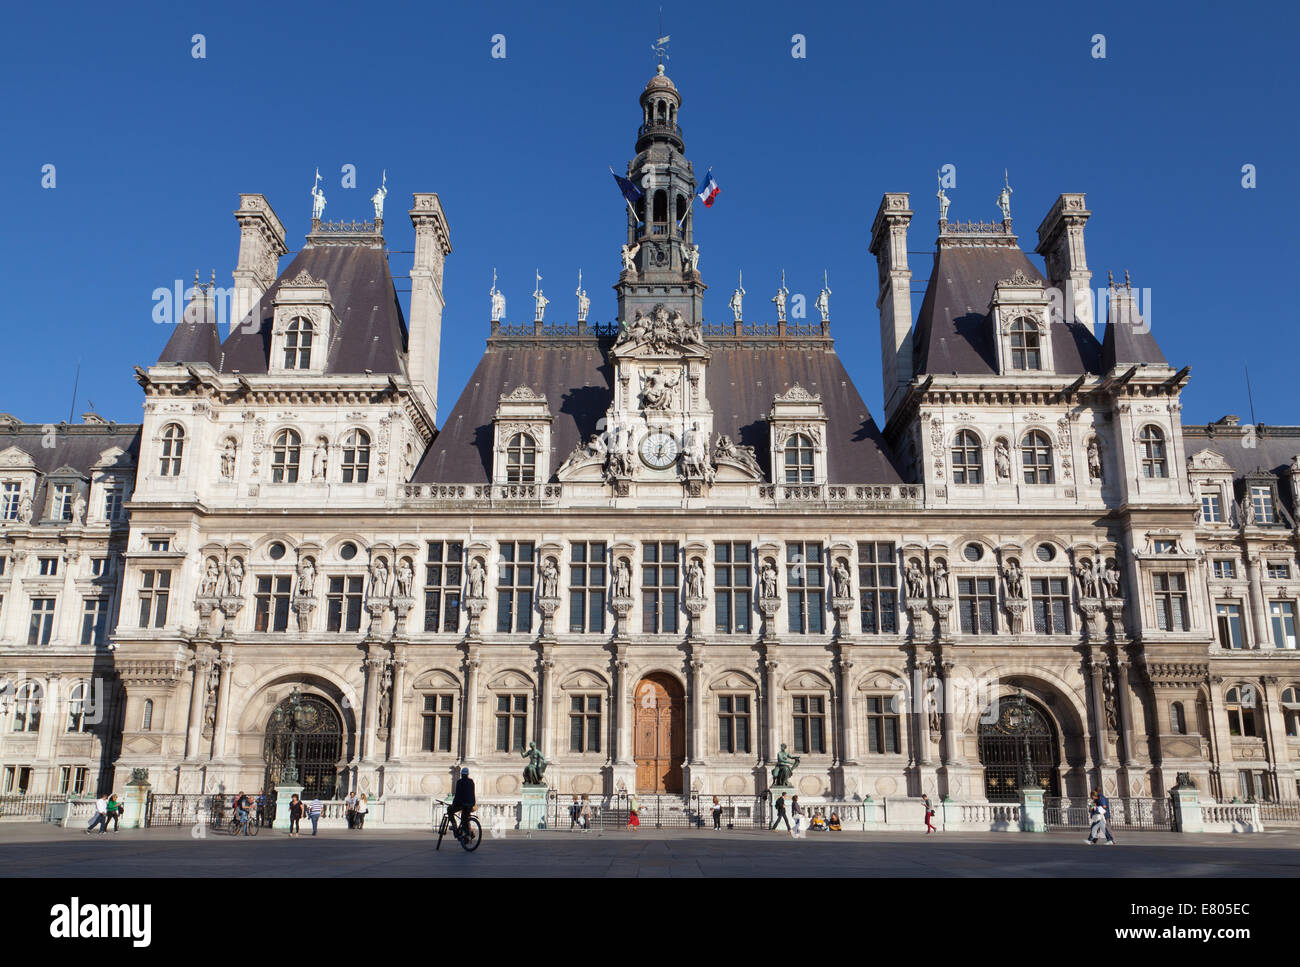 Hôtel de Ville, Paris, France Stock Photo - Alamy